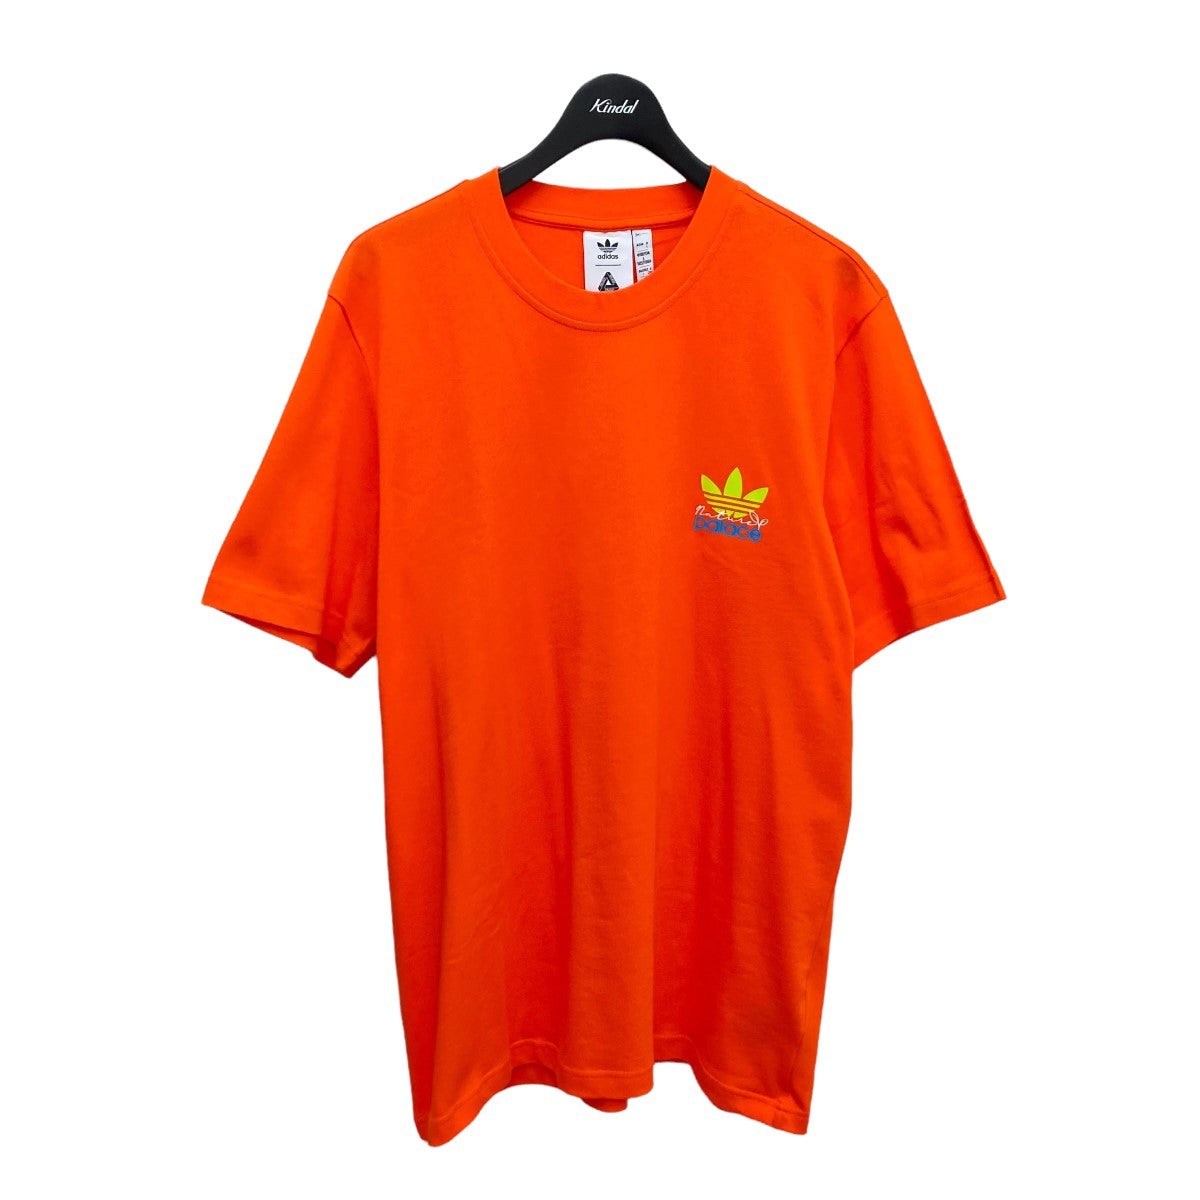 adidas(アディダス) ×PALACE Tシャツ HM9200 オレンジ サイズ 14 